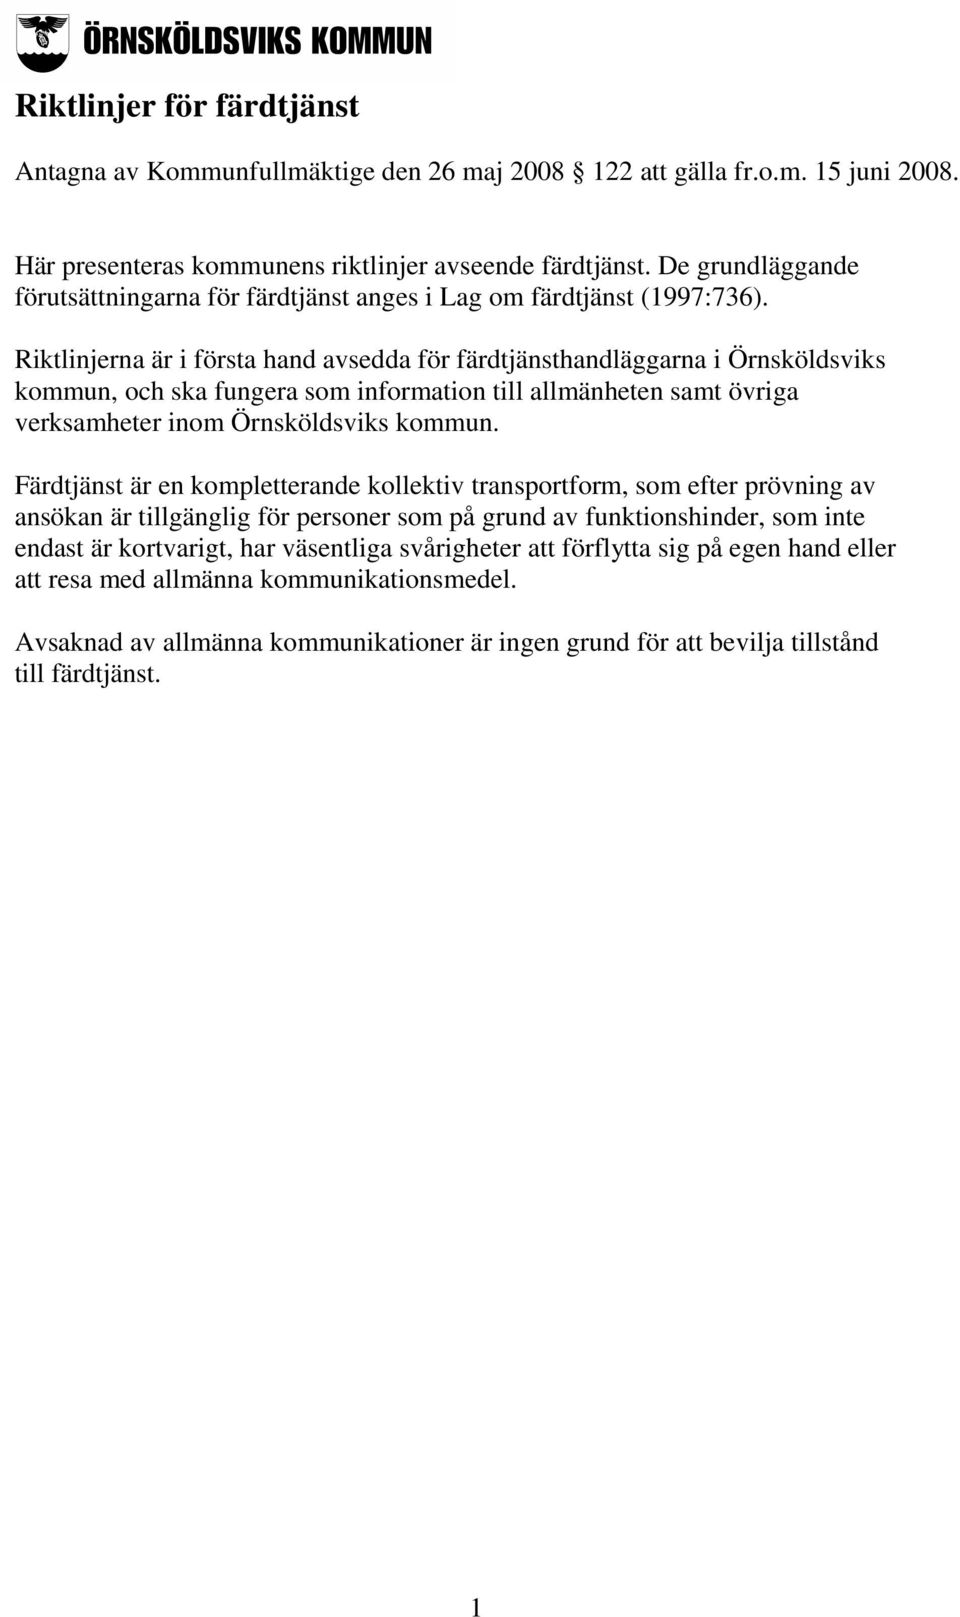 Riktlinjerna är i första hand avsedda för färdtjänsthandläggarna i Örnsköldsviks kommun, och ska fungera som information till allmänheten samt övriga verksamheter inom Örnsköldsviks kommun.